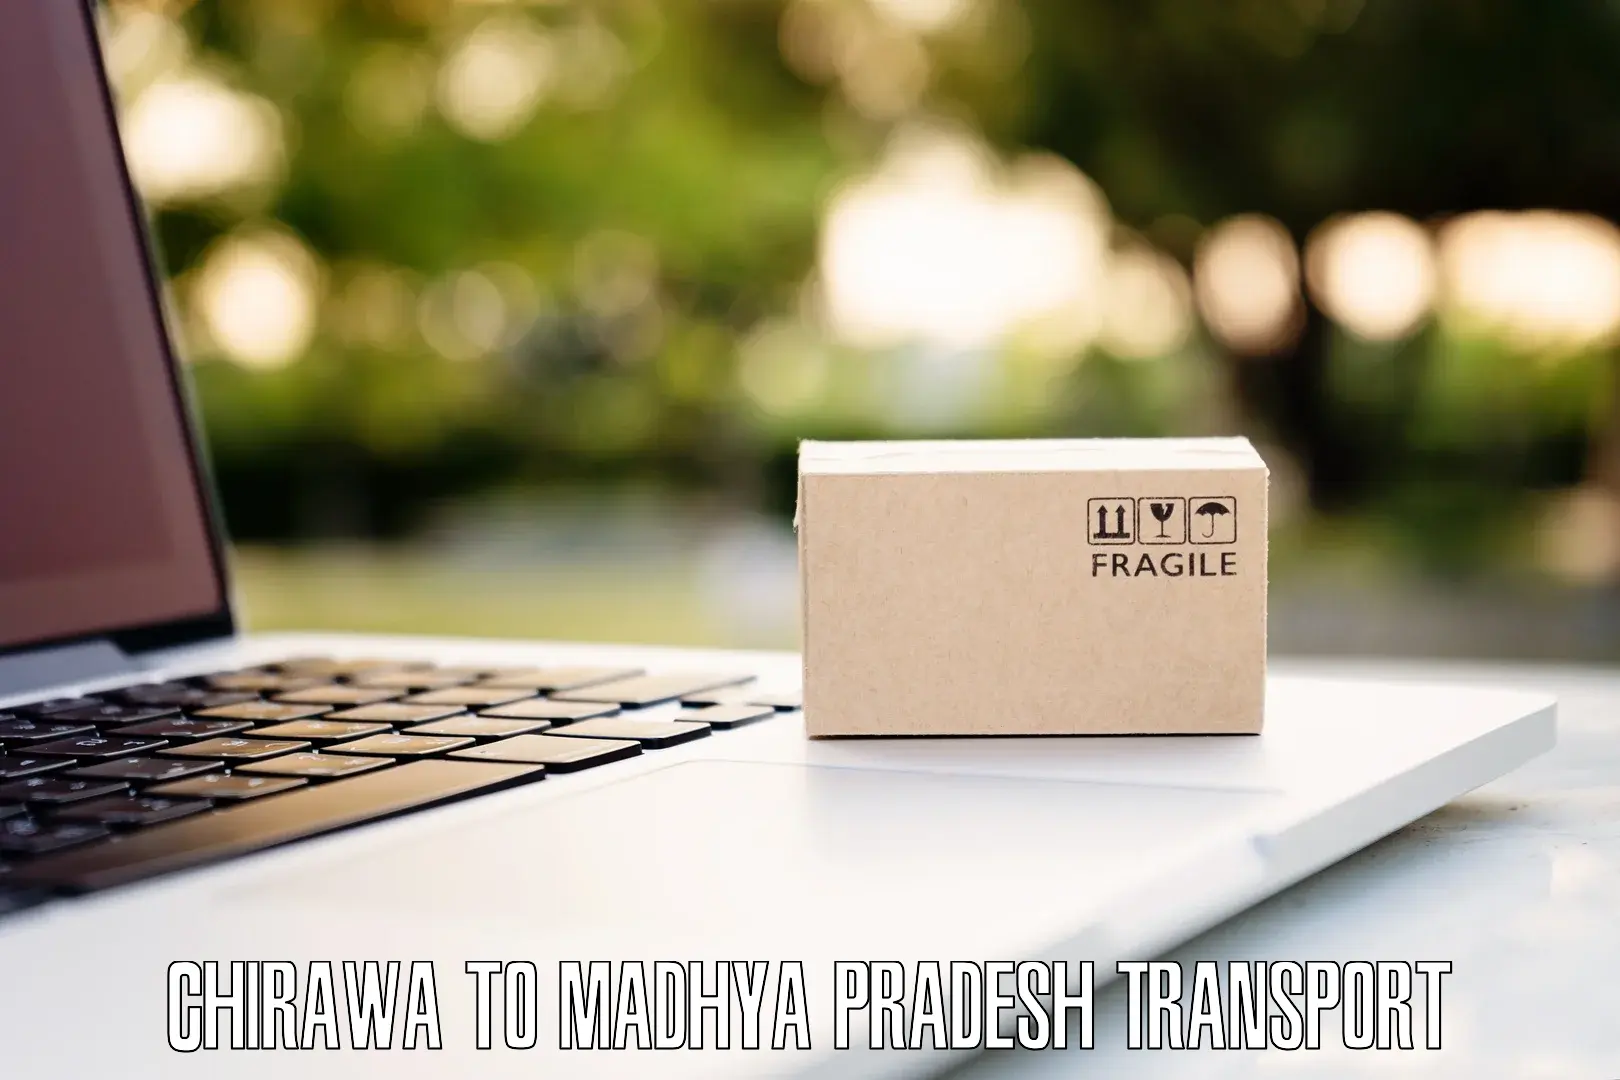 Online transport service Chirawa to Madhya Pradesh